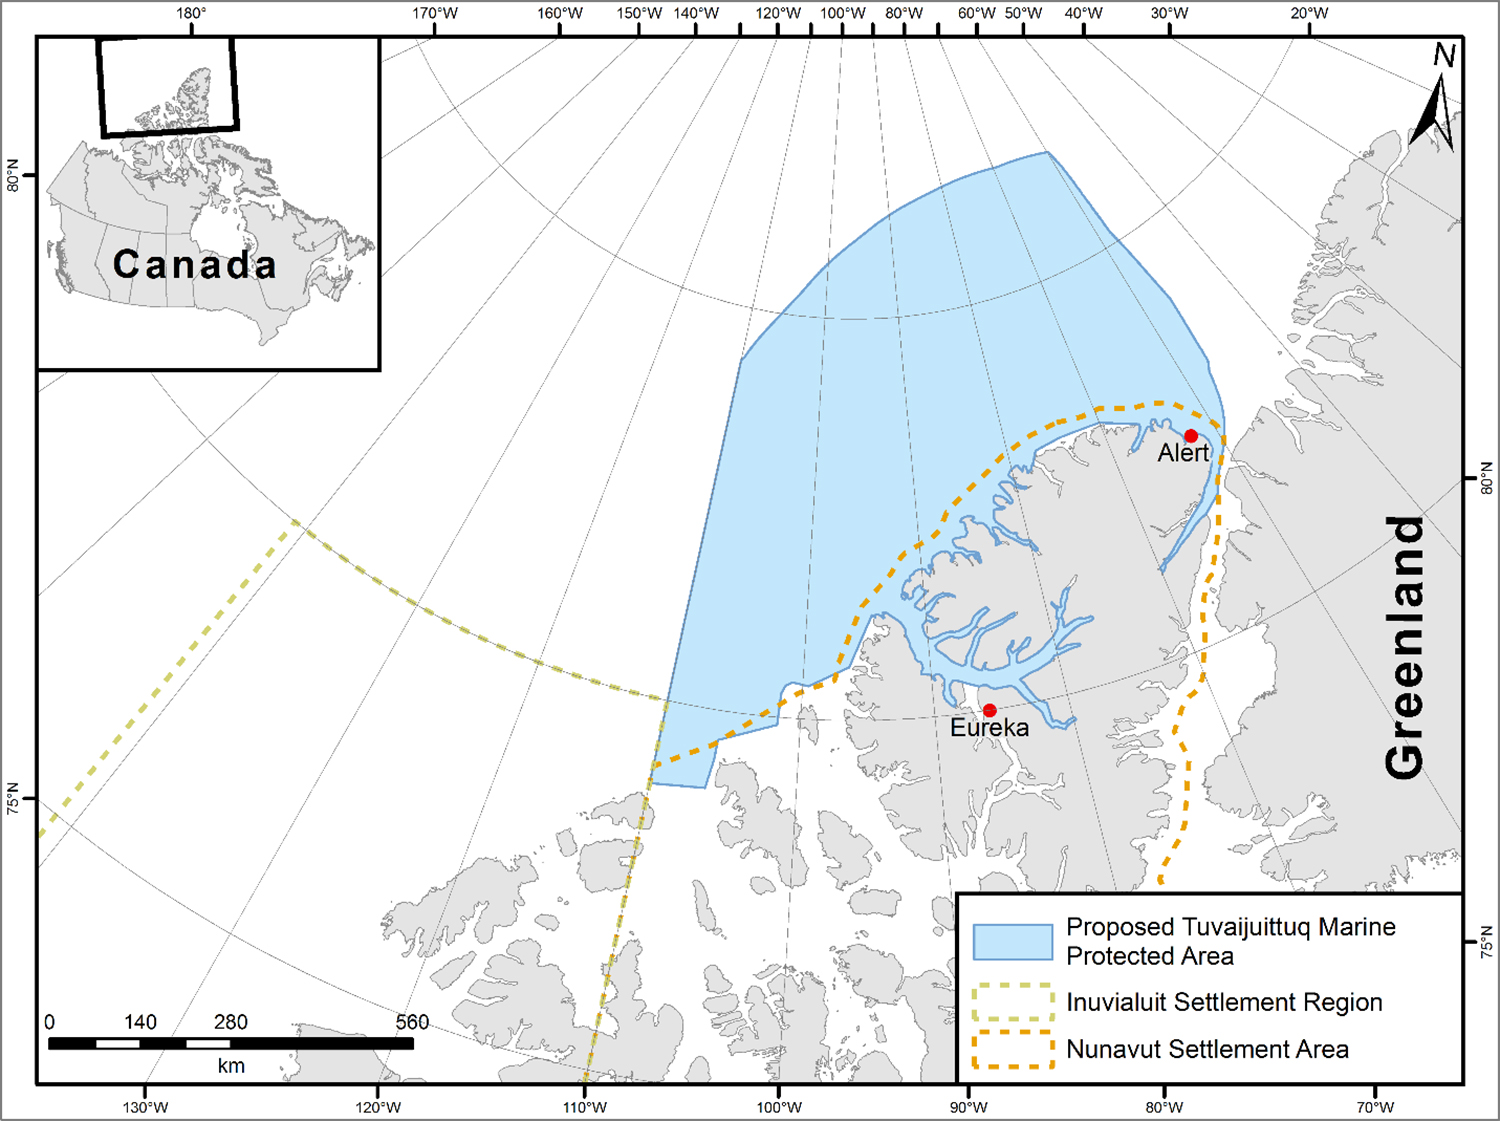 Figure 1. Map of proposed Tuvaijuittuq Marine Protected Area